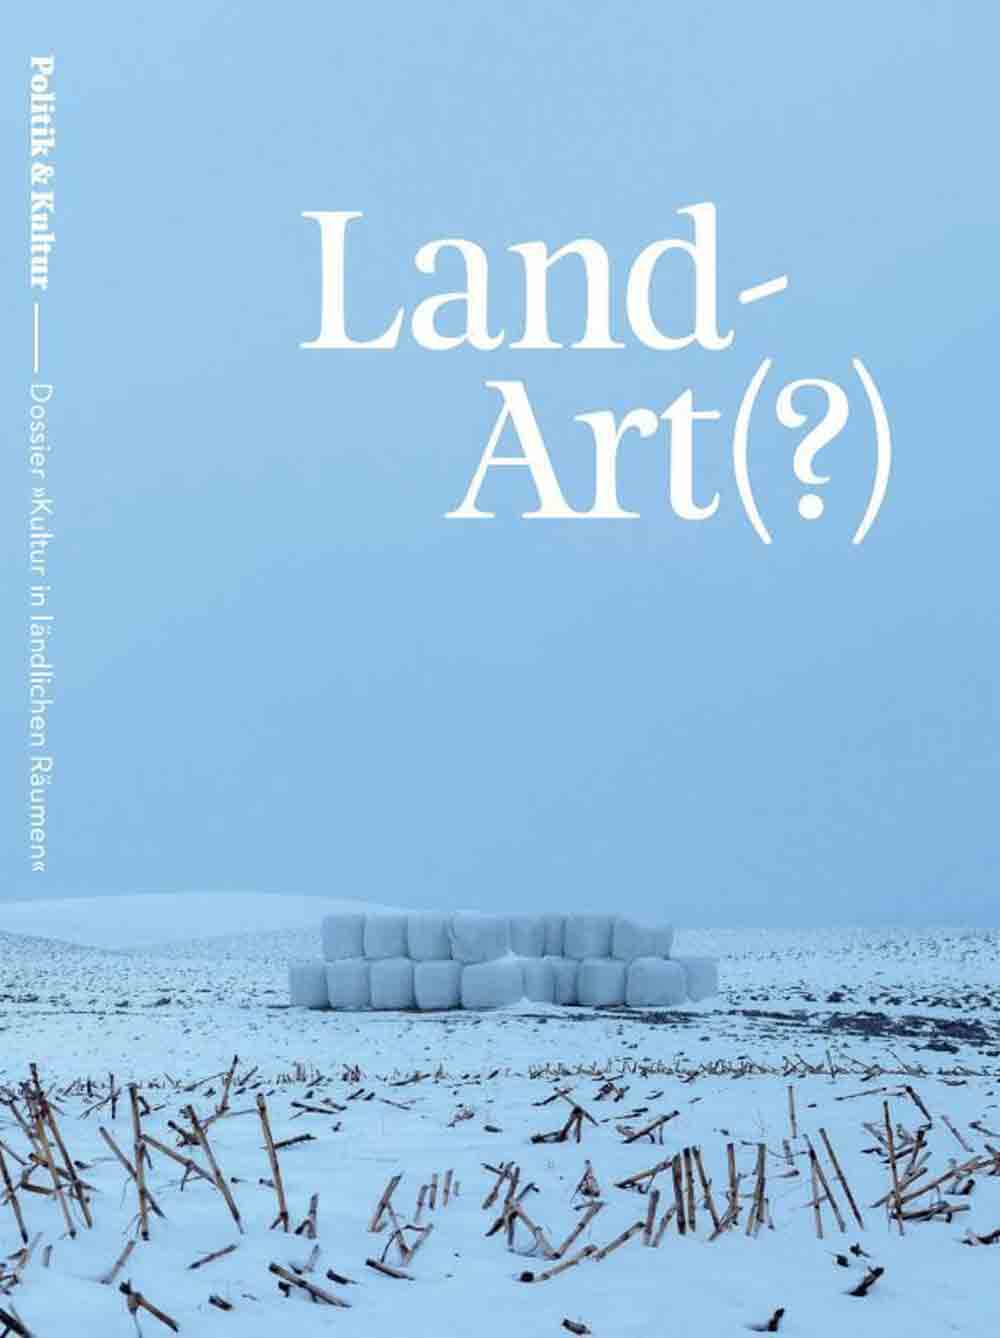 Neuerscheinung, Land Art(?) – Kultur in ländlichen Räumen, Deutscher Kulturrat und LWL legen gemeinsames Dossier vor